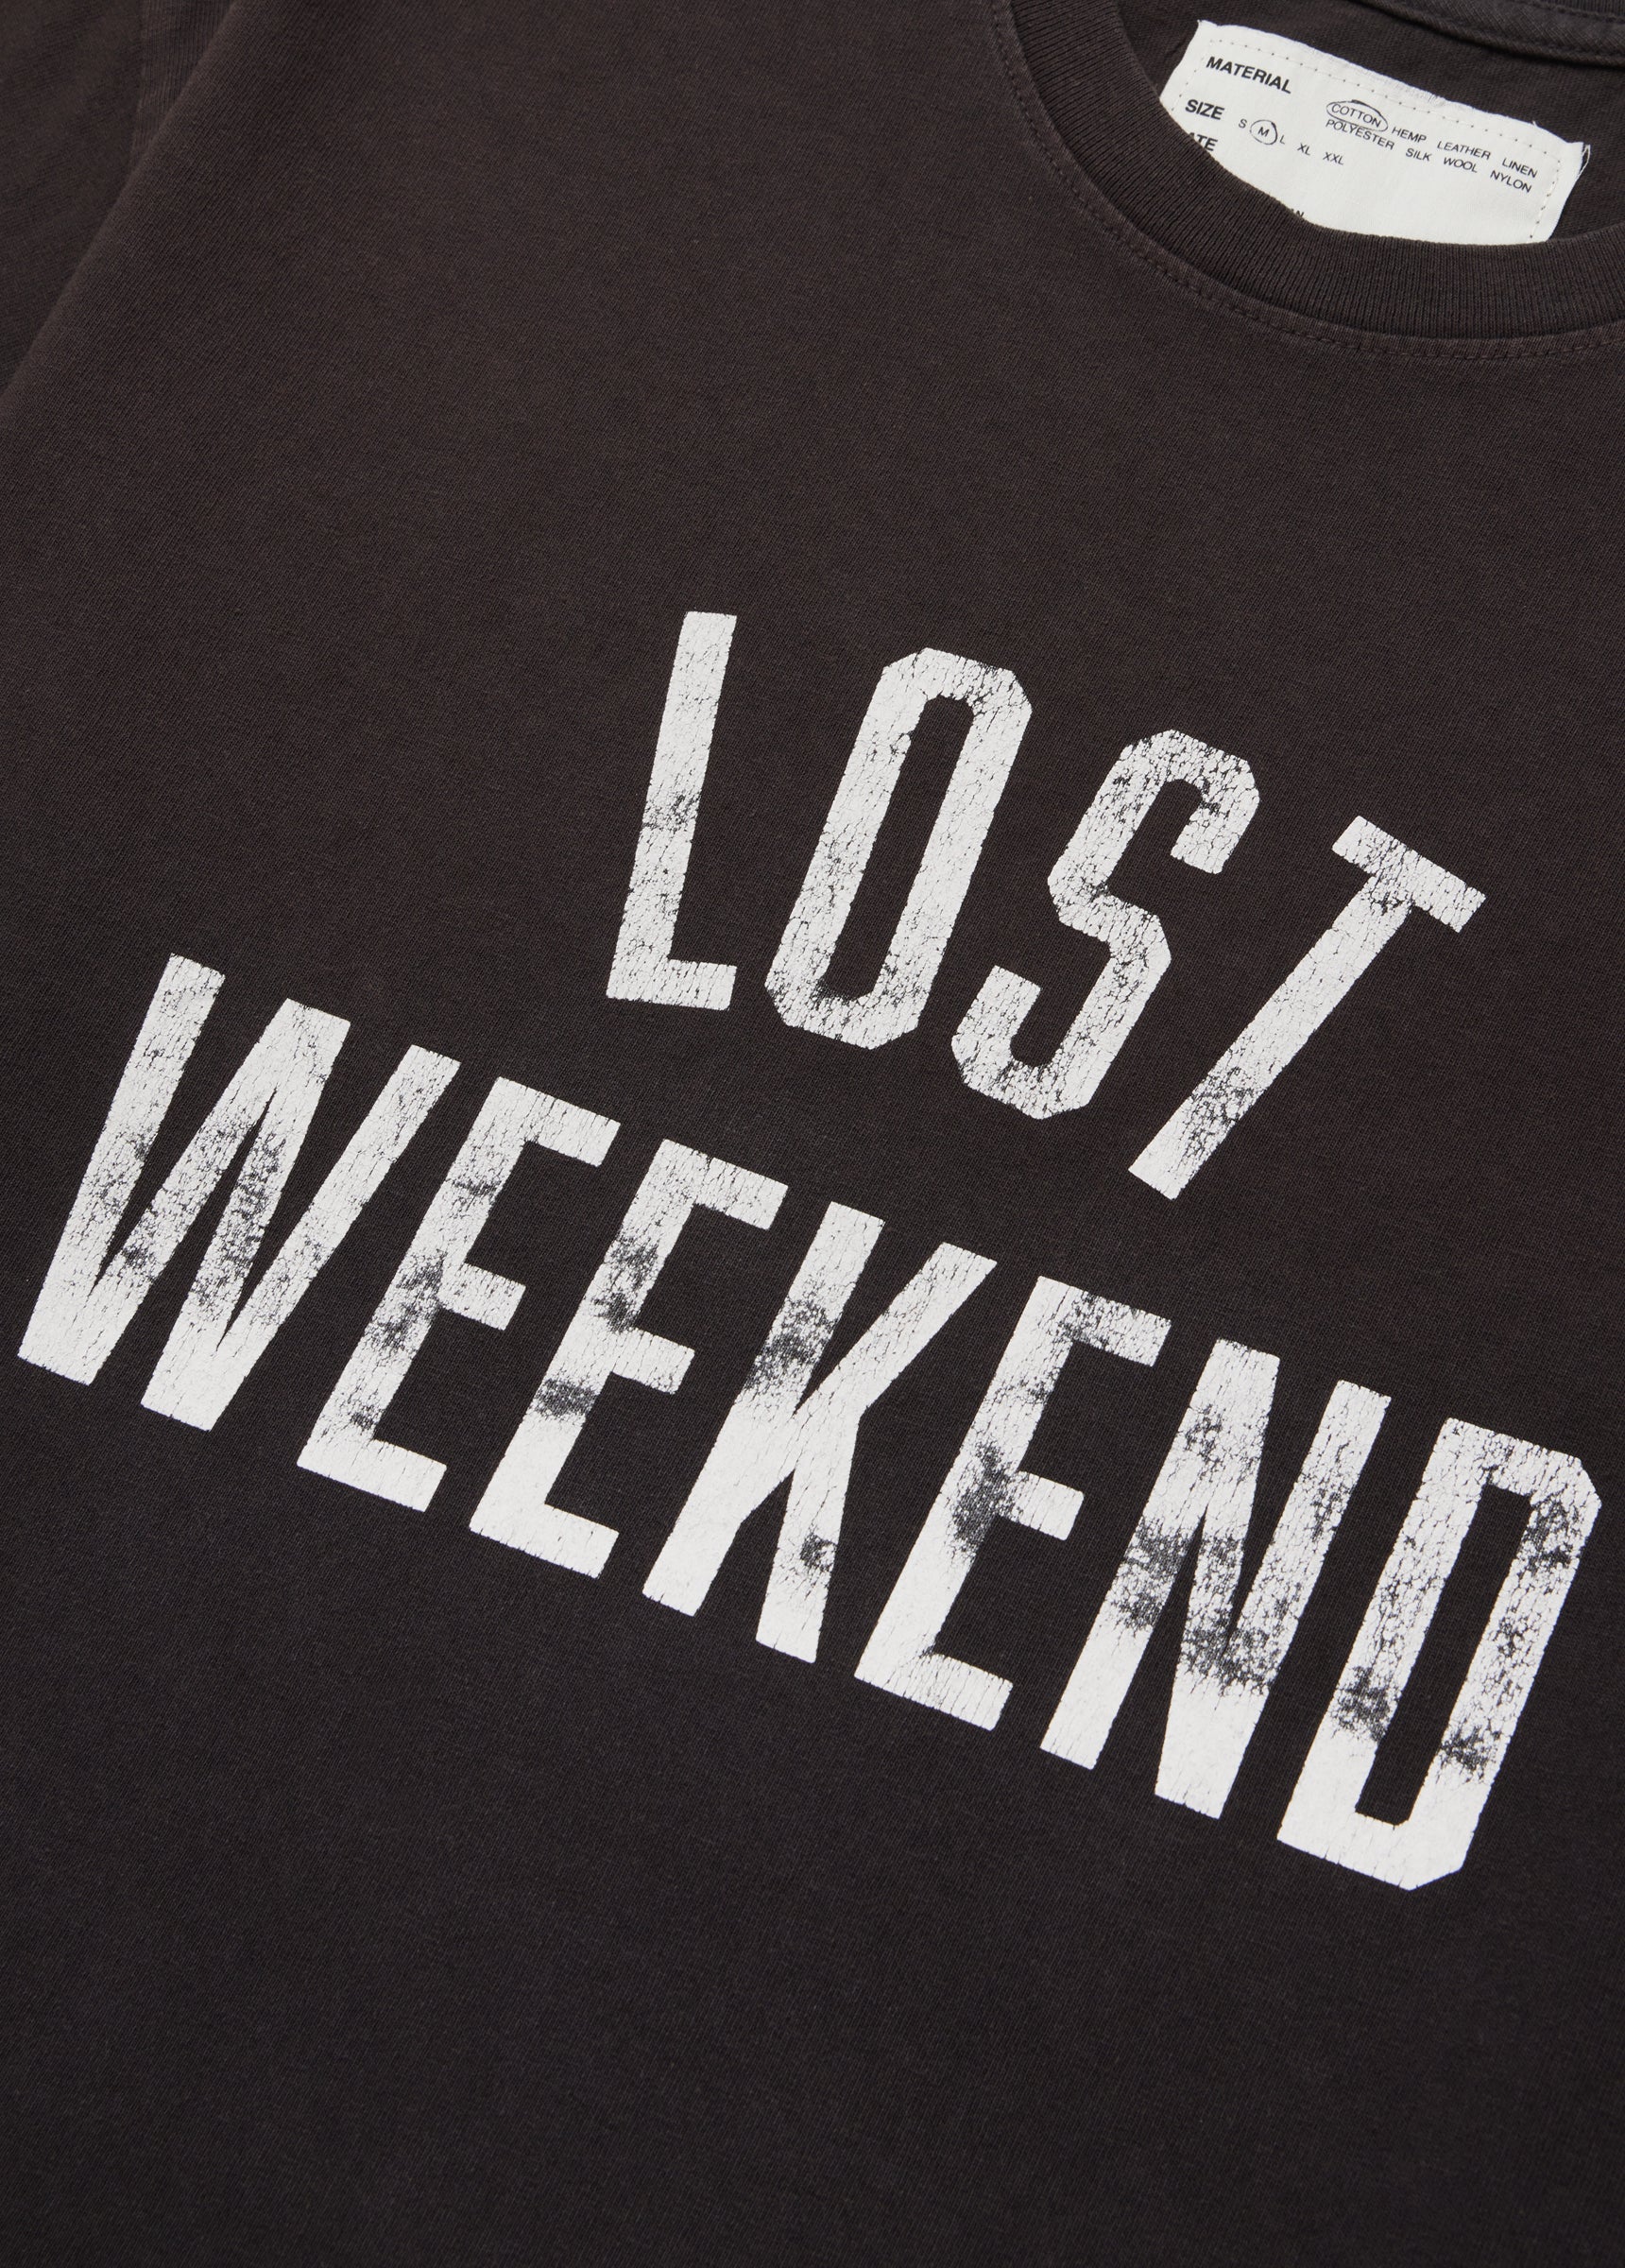 Lost Weekend Tee | Black